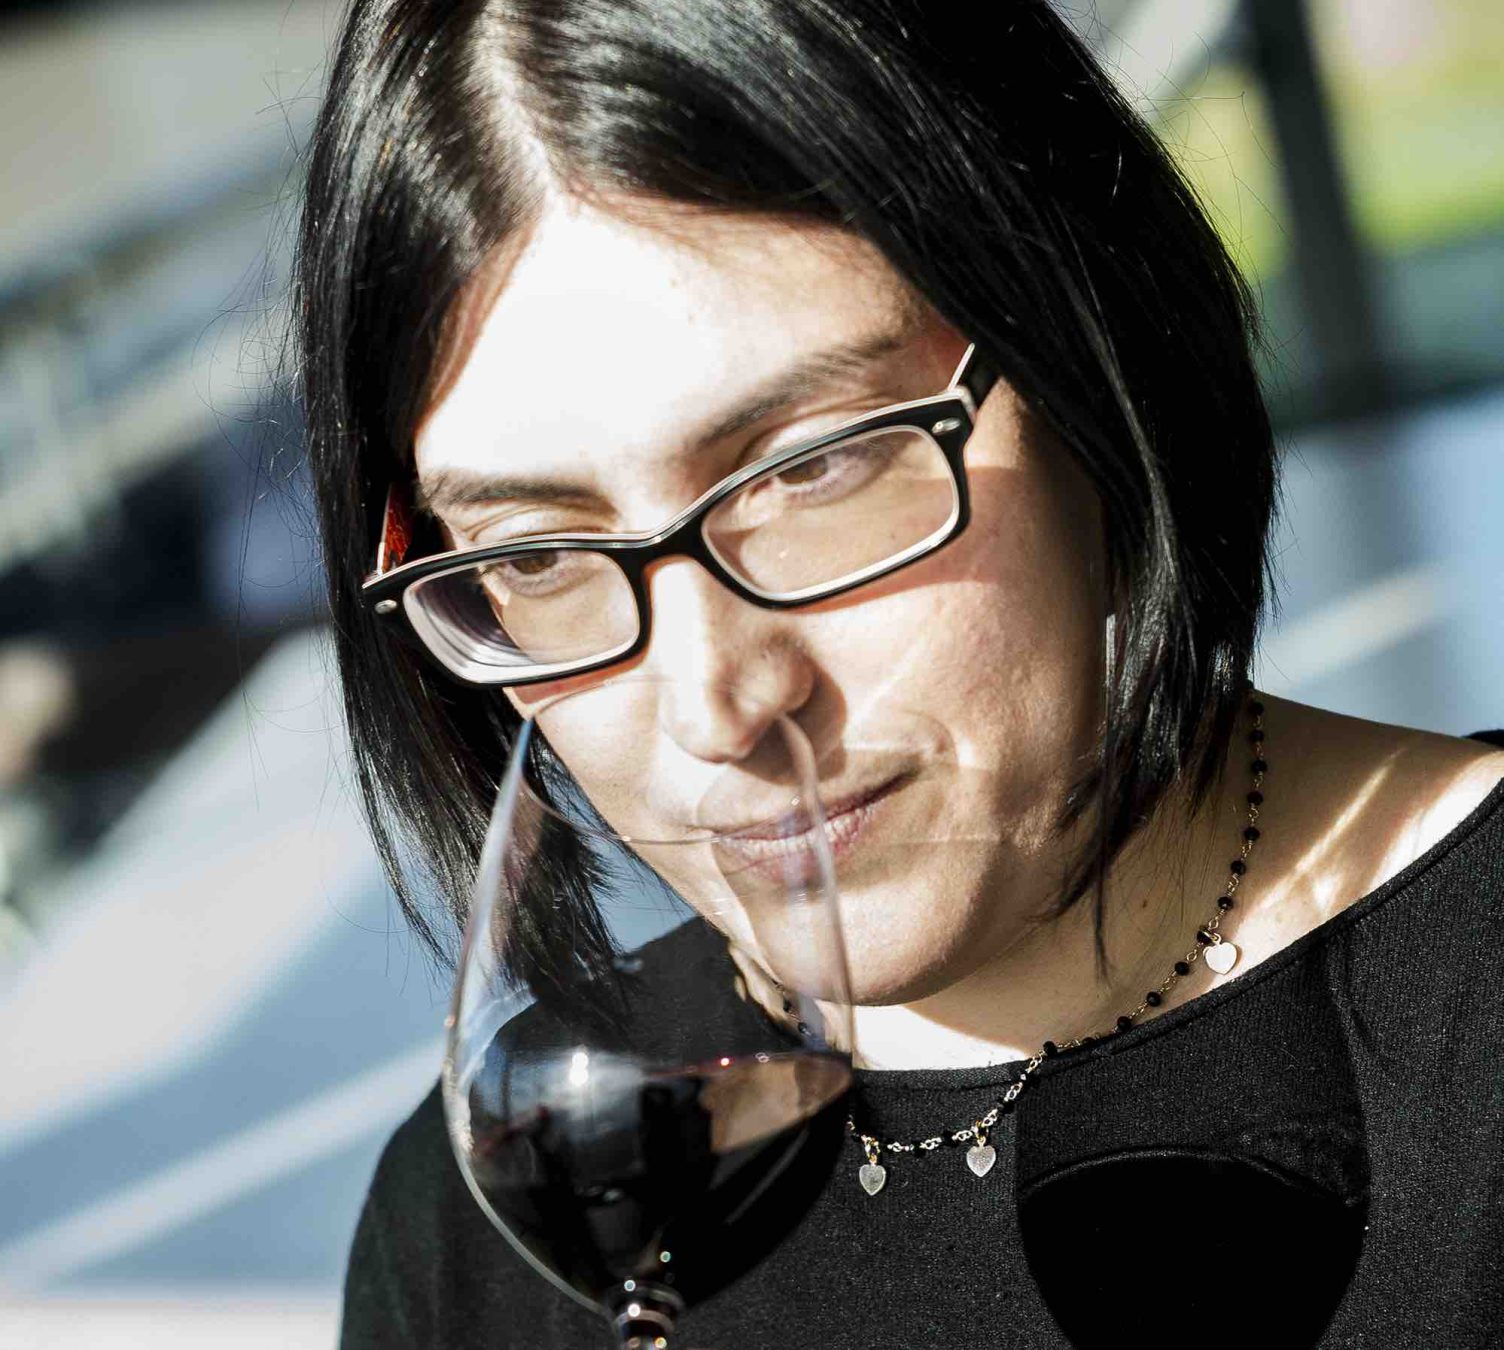 Intervista a Olga Fusari, l'enologa di Ornellaia, azienda vitivinicola famosa nel mondo, grazie ai suoi vini toscani maturati tra le vigne di Bolgheri